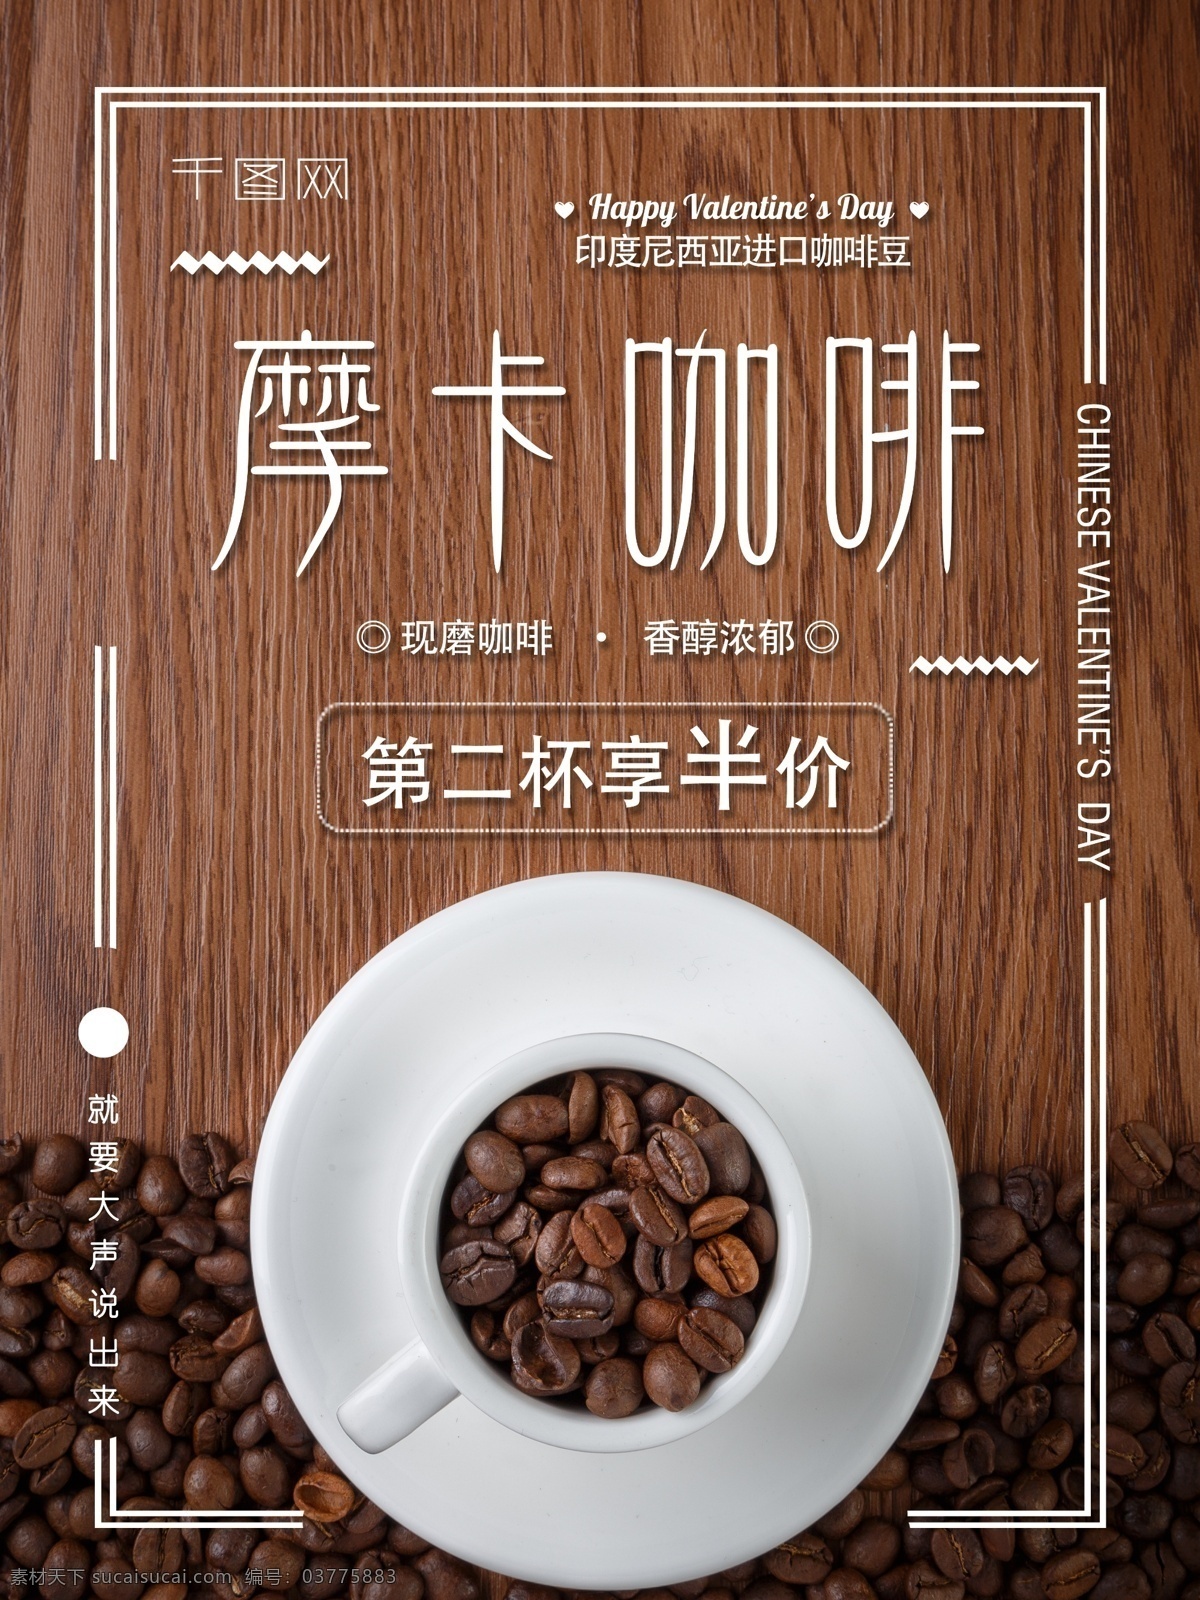 2018 年 简约 摩卡 咖啡 热饮 海报 促销 第二杯半价 现磨 香醇浓郁